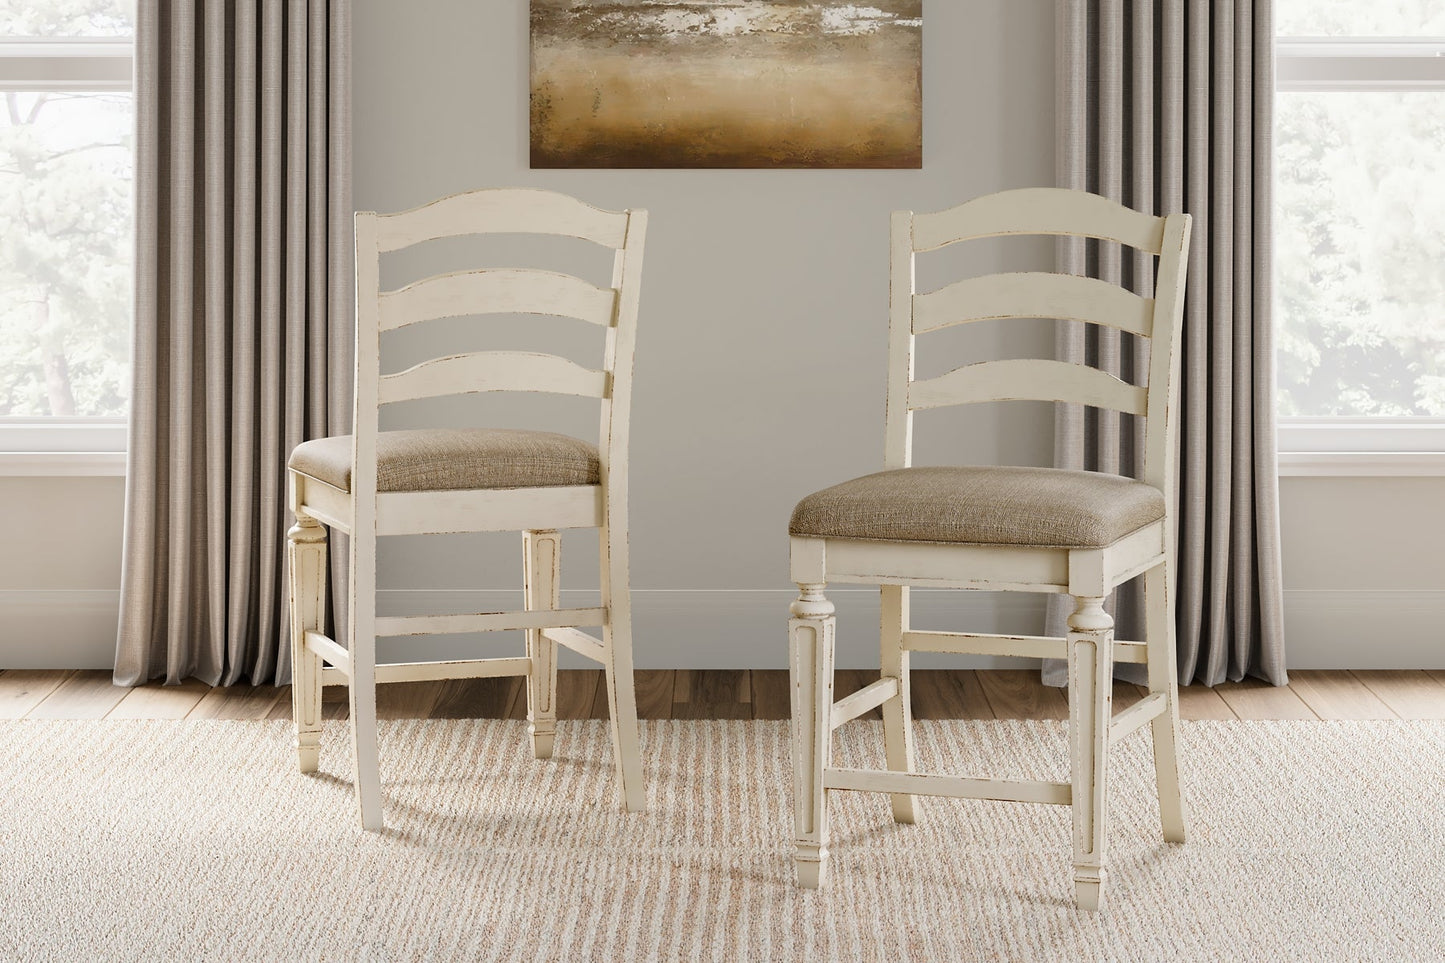 Realyn Upholstered Barstool (2/CN) Smyrna Furniture Outlet